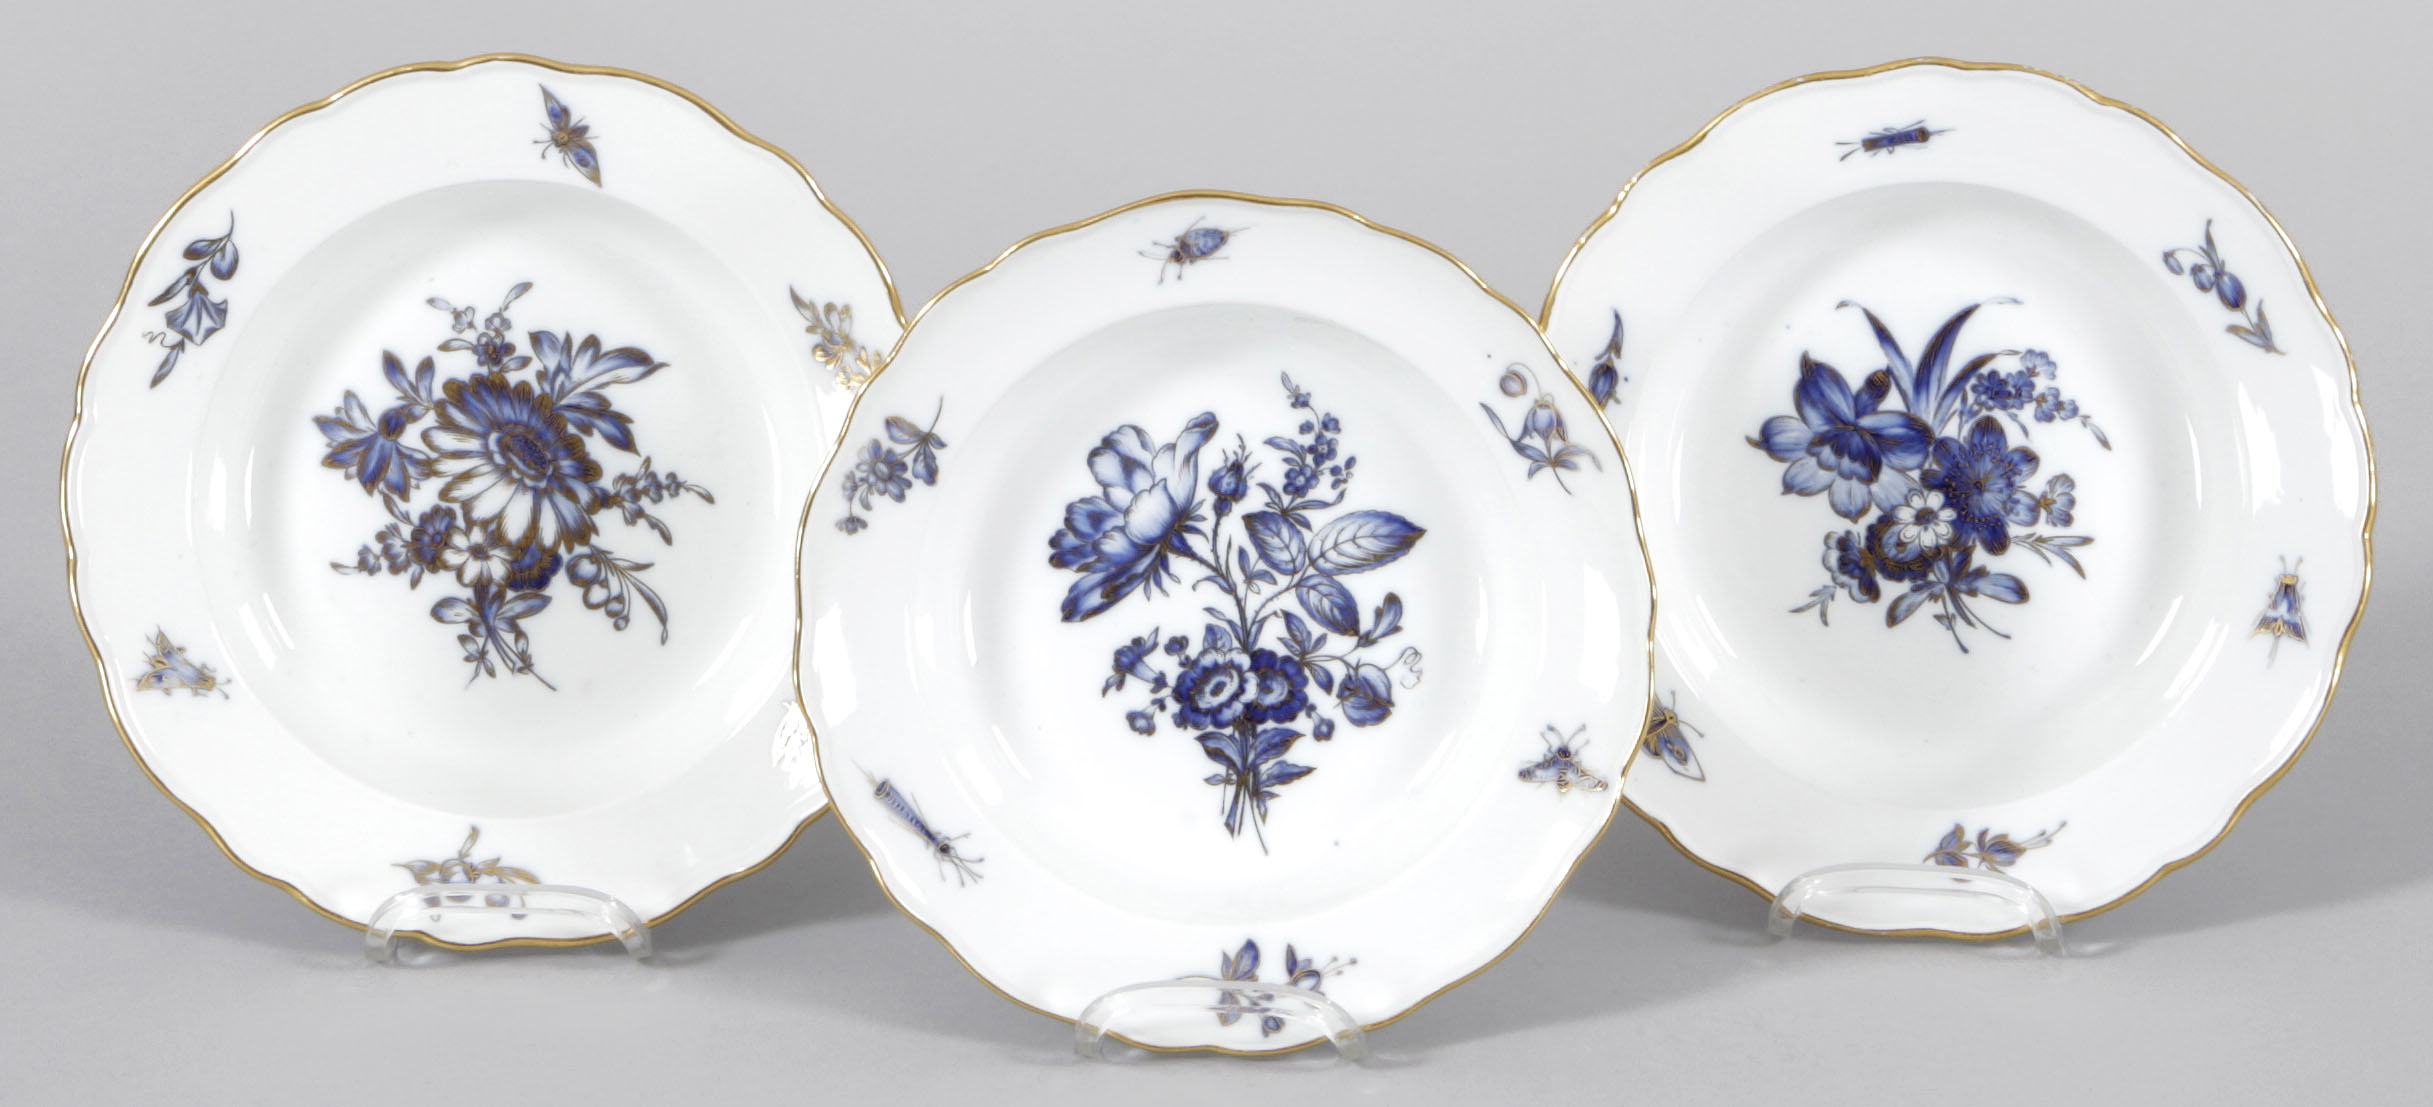 3 Suppenteller Porzellan, Meissen, um 1900 Dekor "Blaue Blume" m. Insekten, goldgehöht. Form "